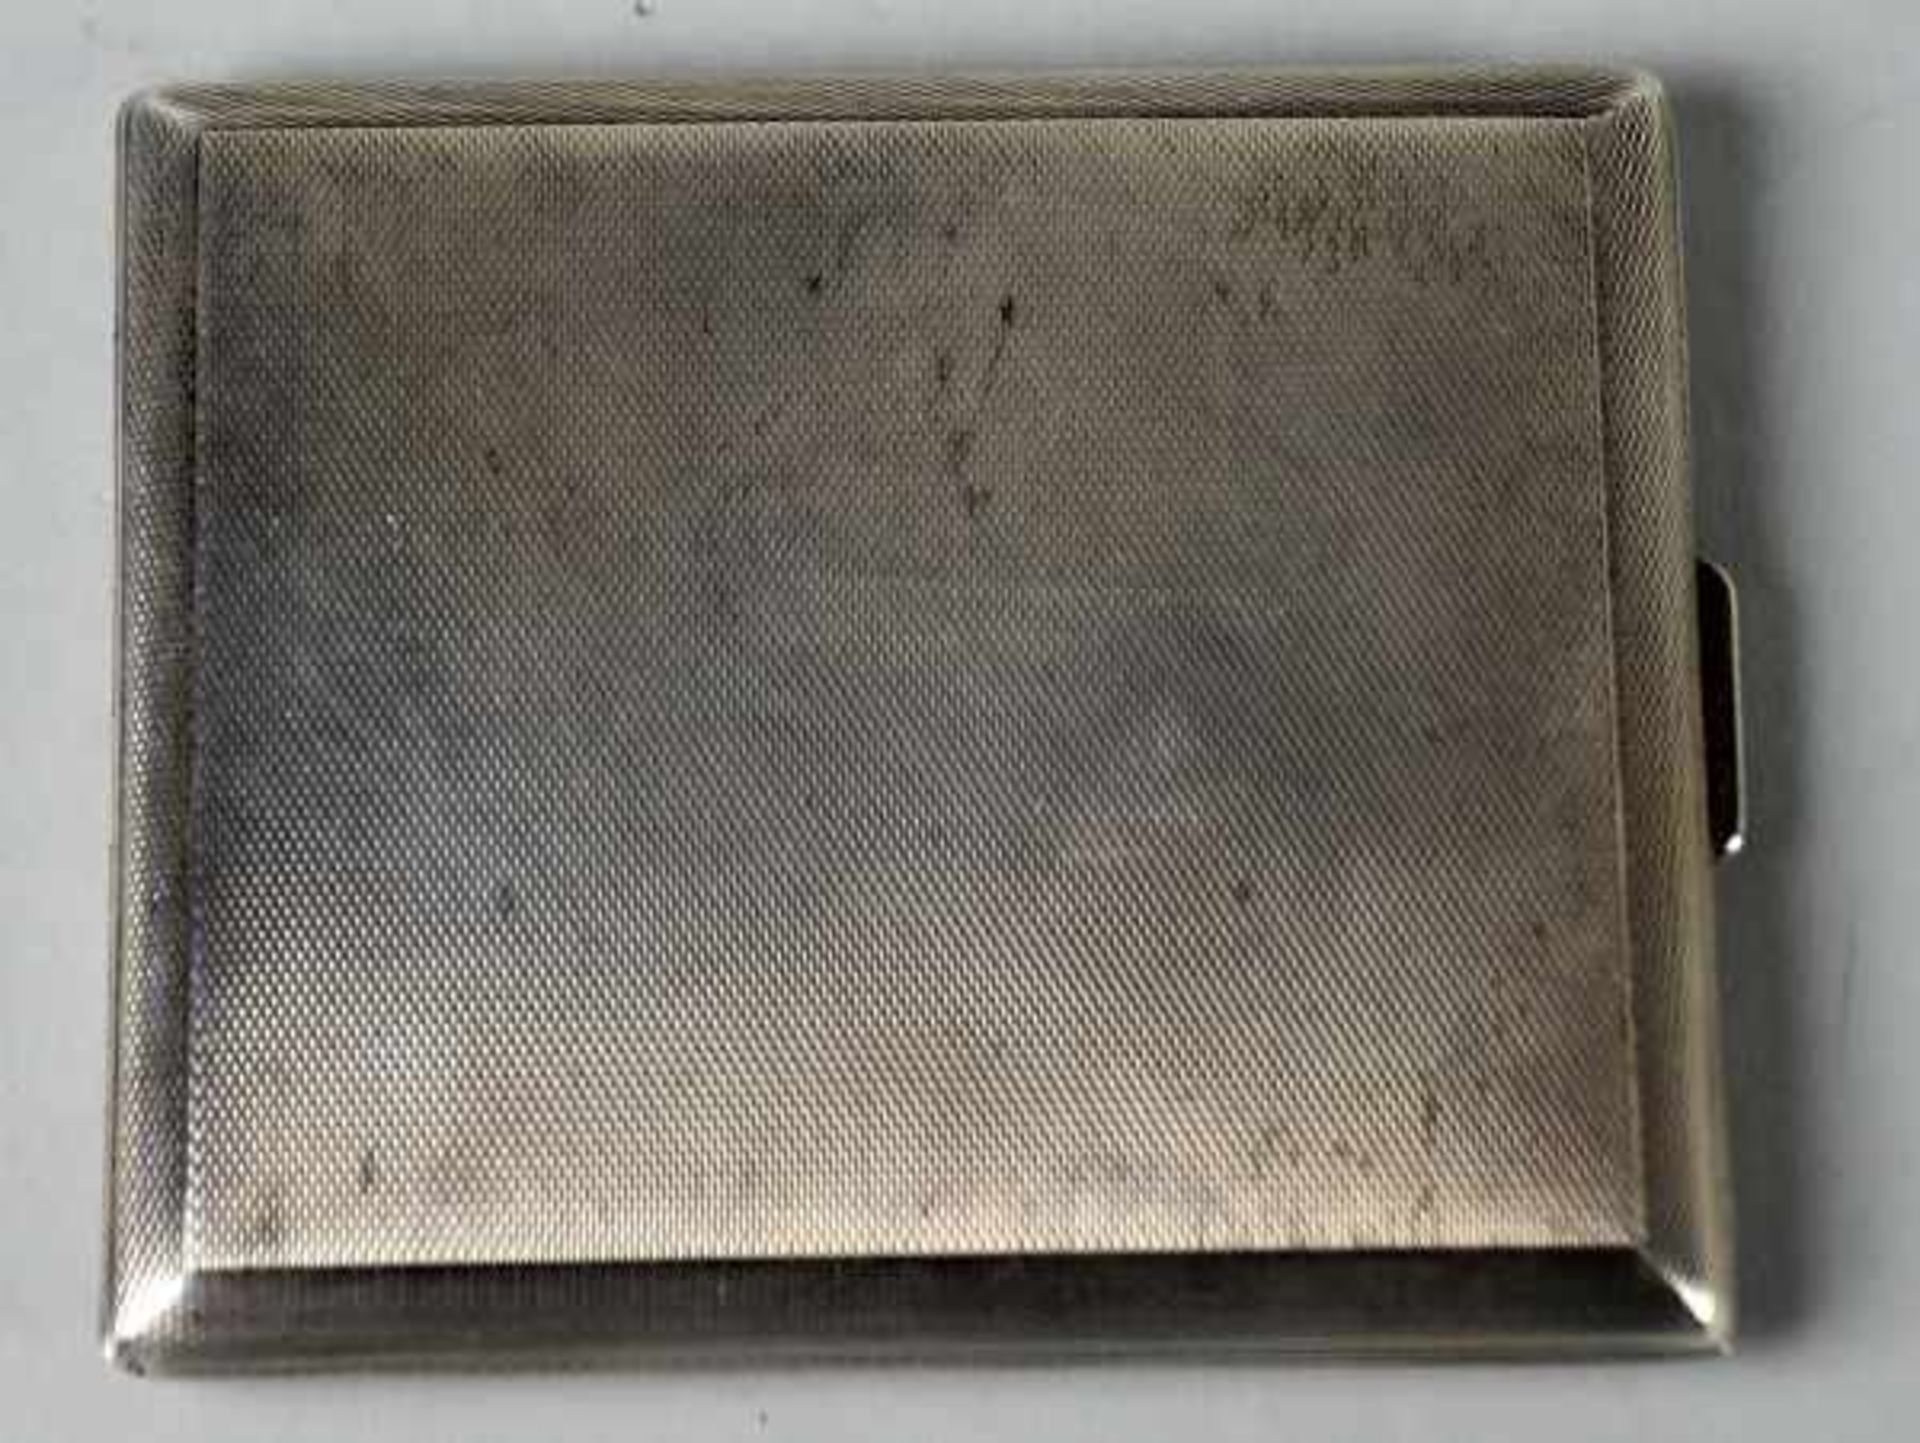 ZIGARETTENETUI rechteckige Form, im Innendeckel Monogramm "EB", Silber 925, 95gr, 9x7,5cm- - -23. - Bild 2 aus 4